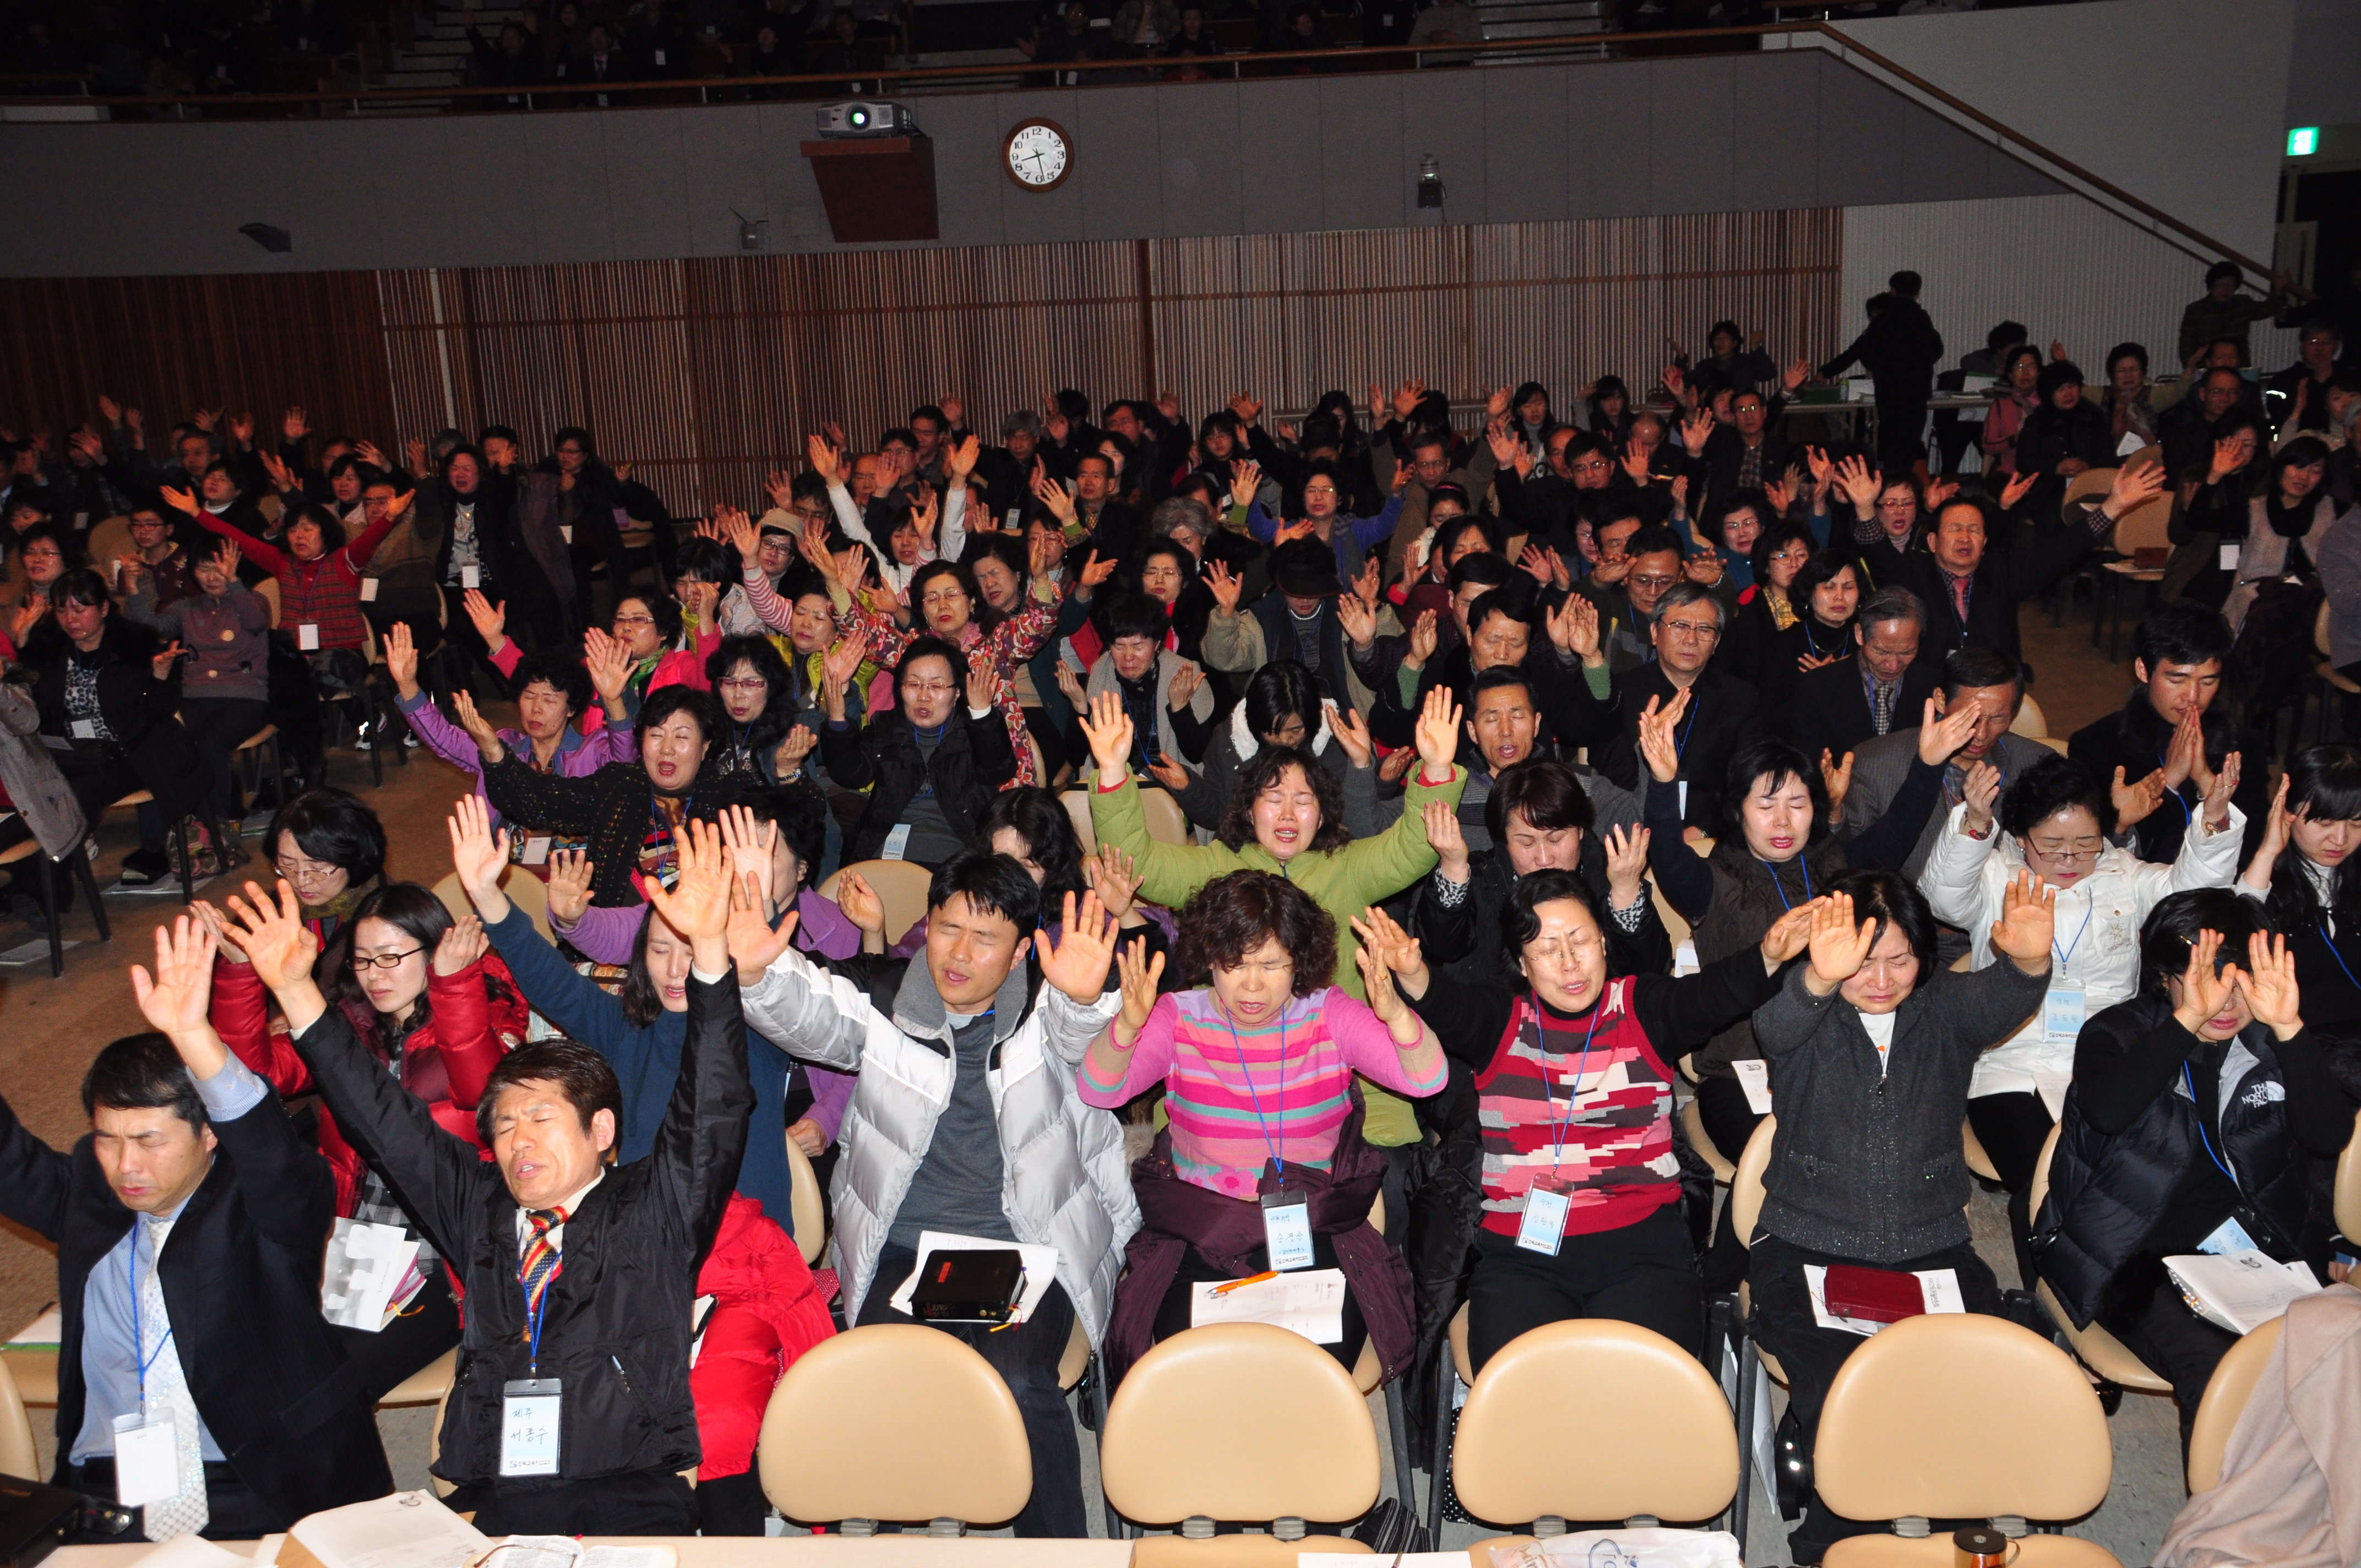 2010.1.25-27 한국교육자선교회 전국연찬회(소망수양관) 사진입니다